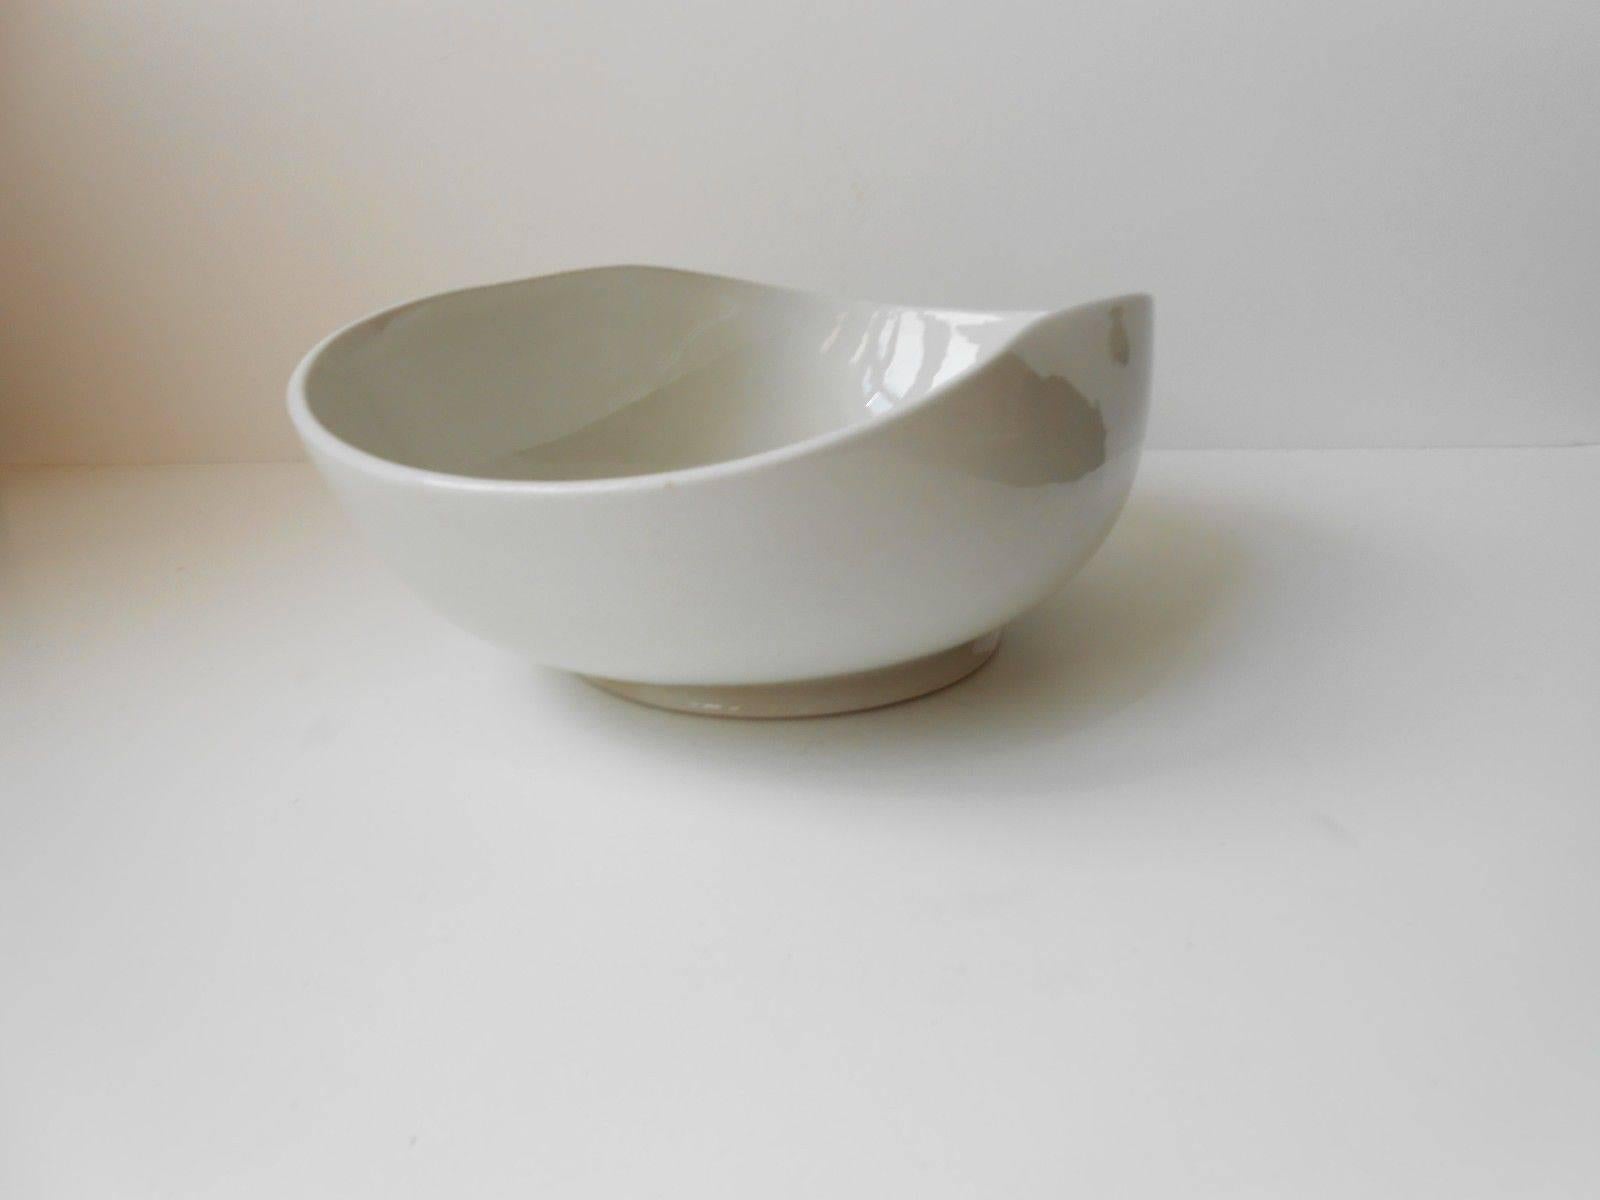 Glazed White Collapsed Ceramic Dish by Wilhelm Kåge for Gustavsberg, Sweden, 1930s For Sale